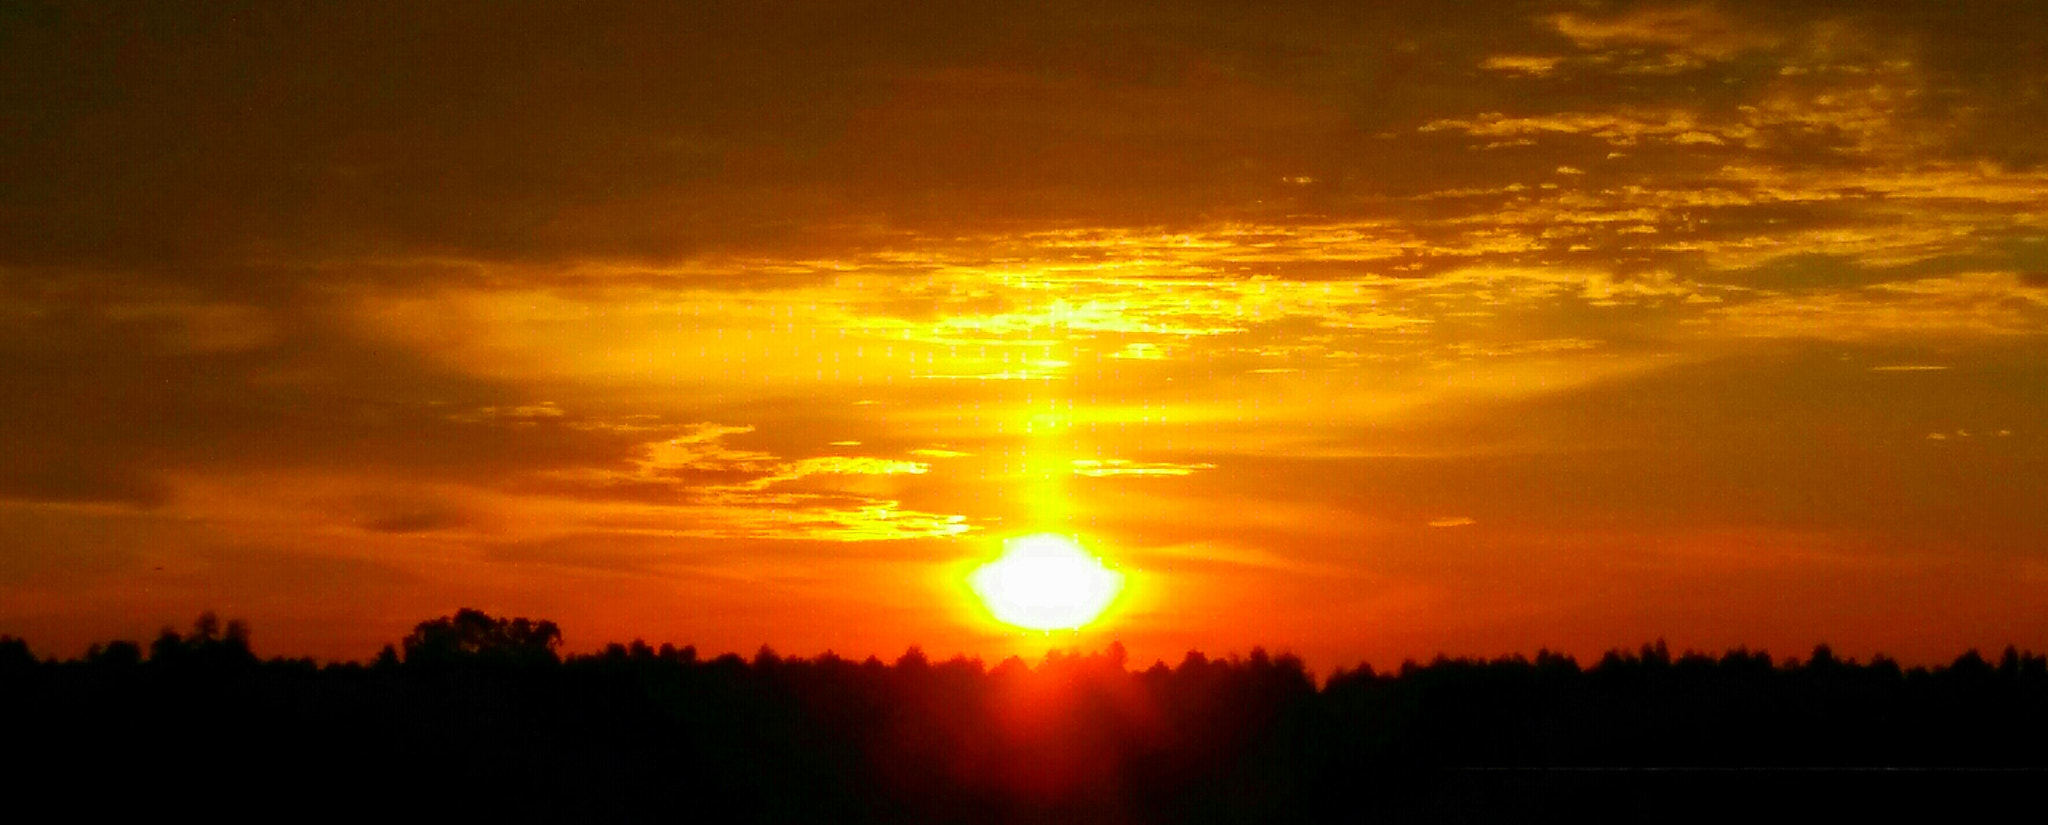 OnePlus ONE E1003 sample photo. Sunrise photography